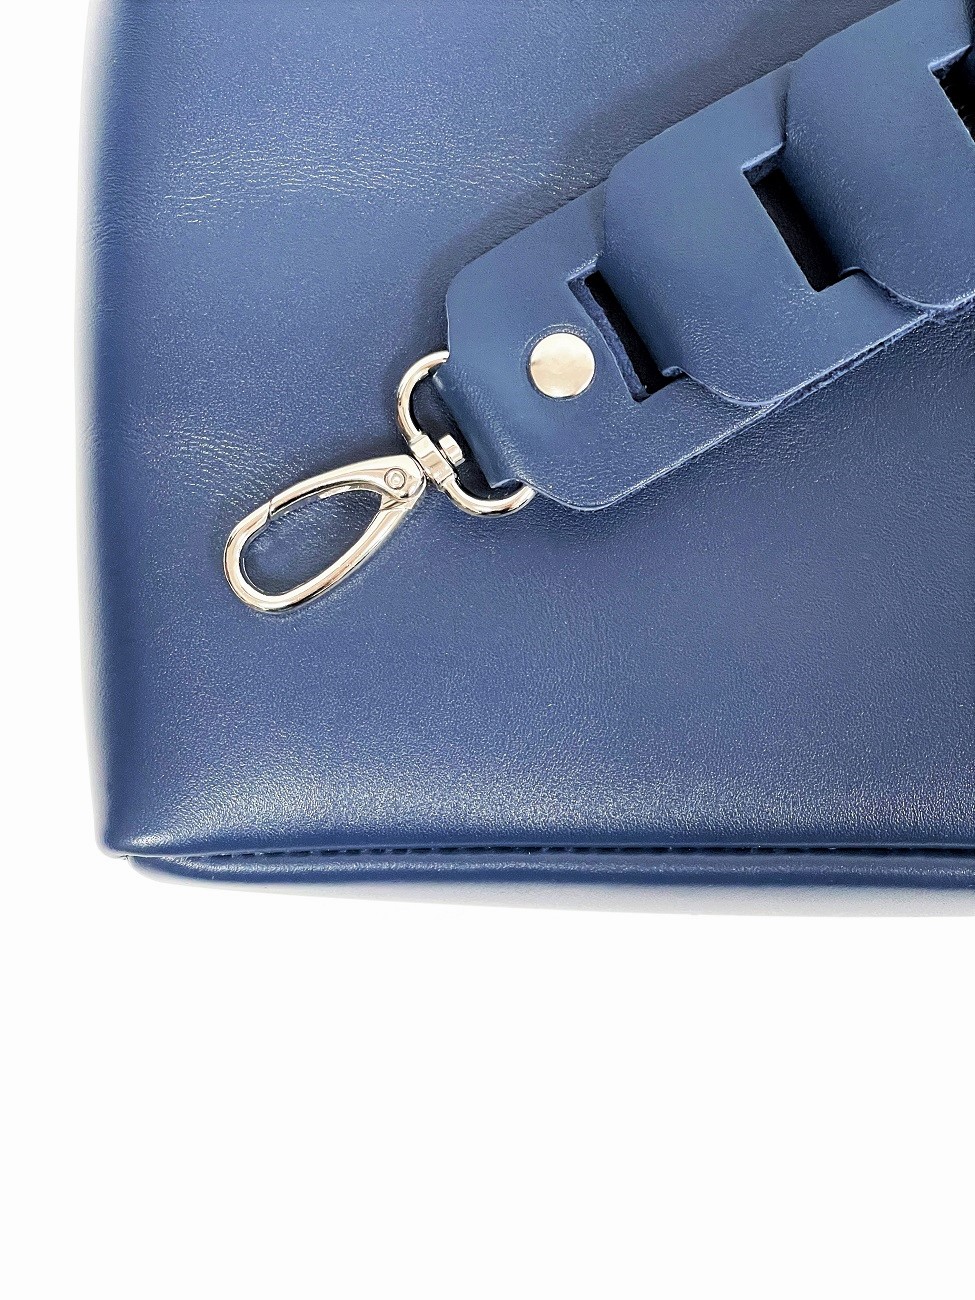 Плечевой ремень для сумки синий T005 sapphire